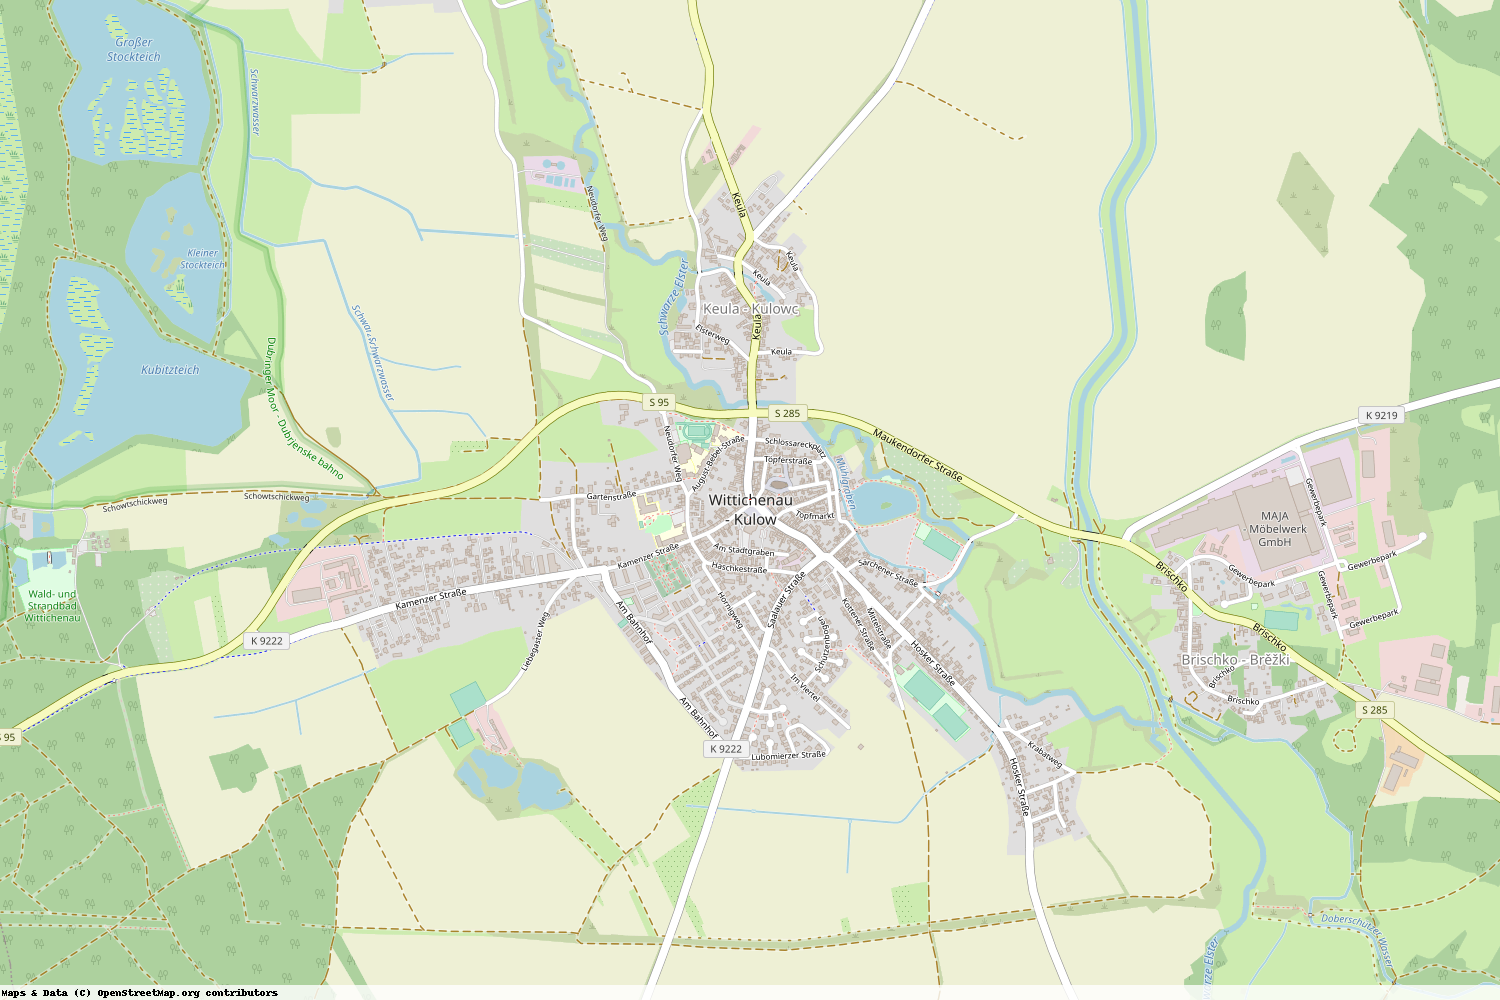 Ist gerade Stromausfall in Sachsen - Bautzen - Wittichenau?